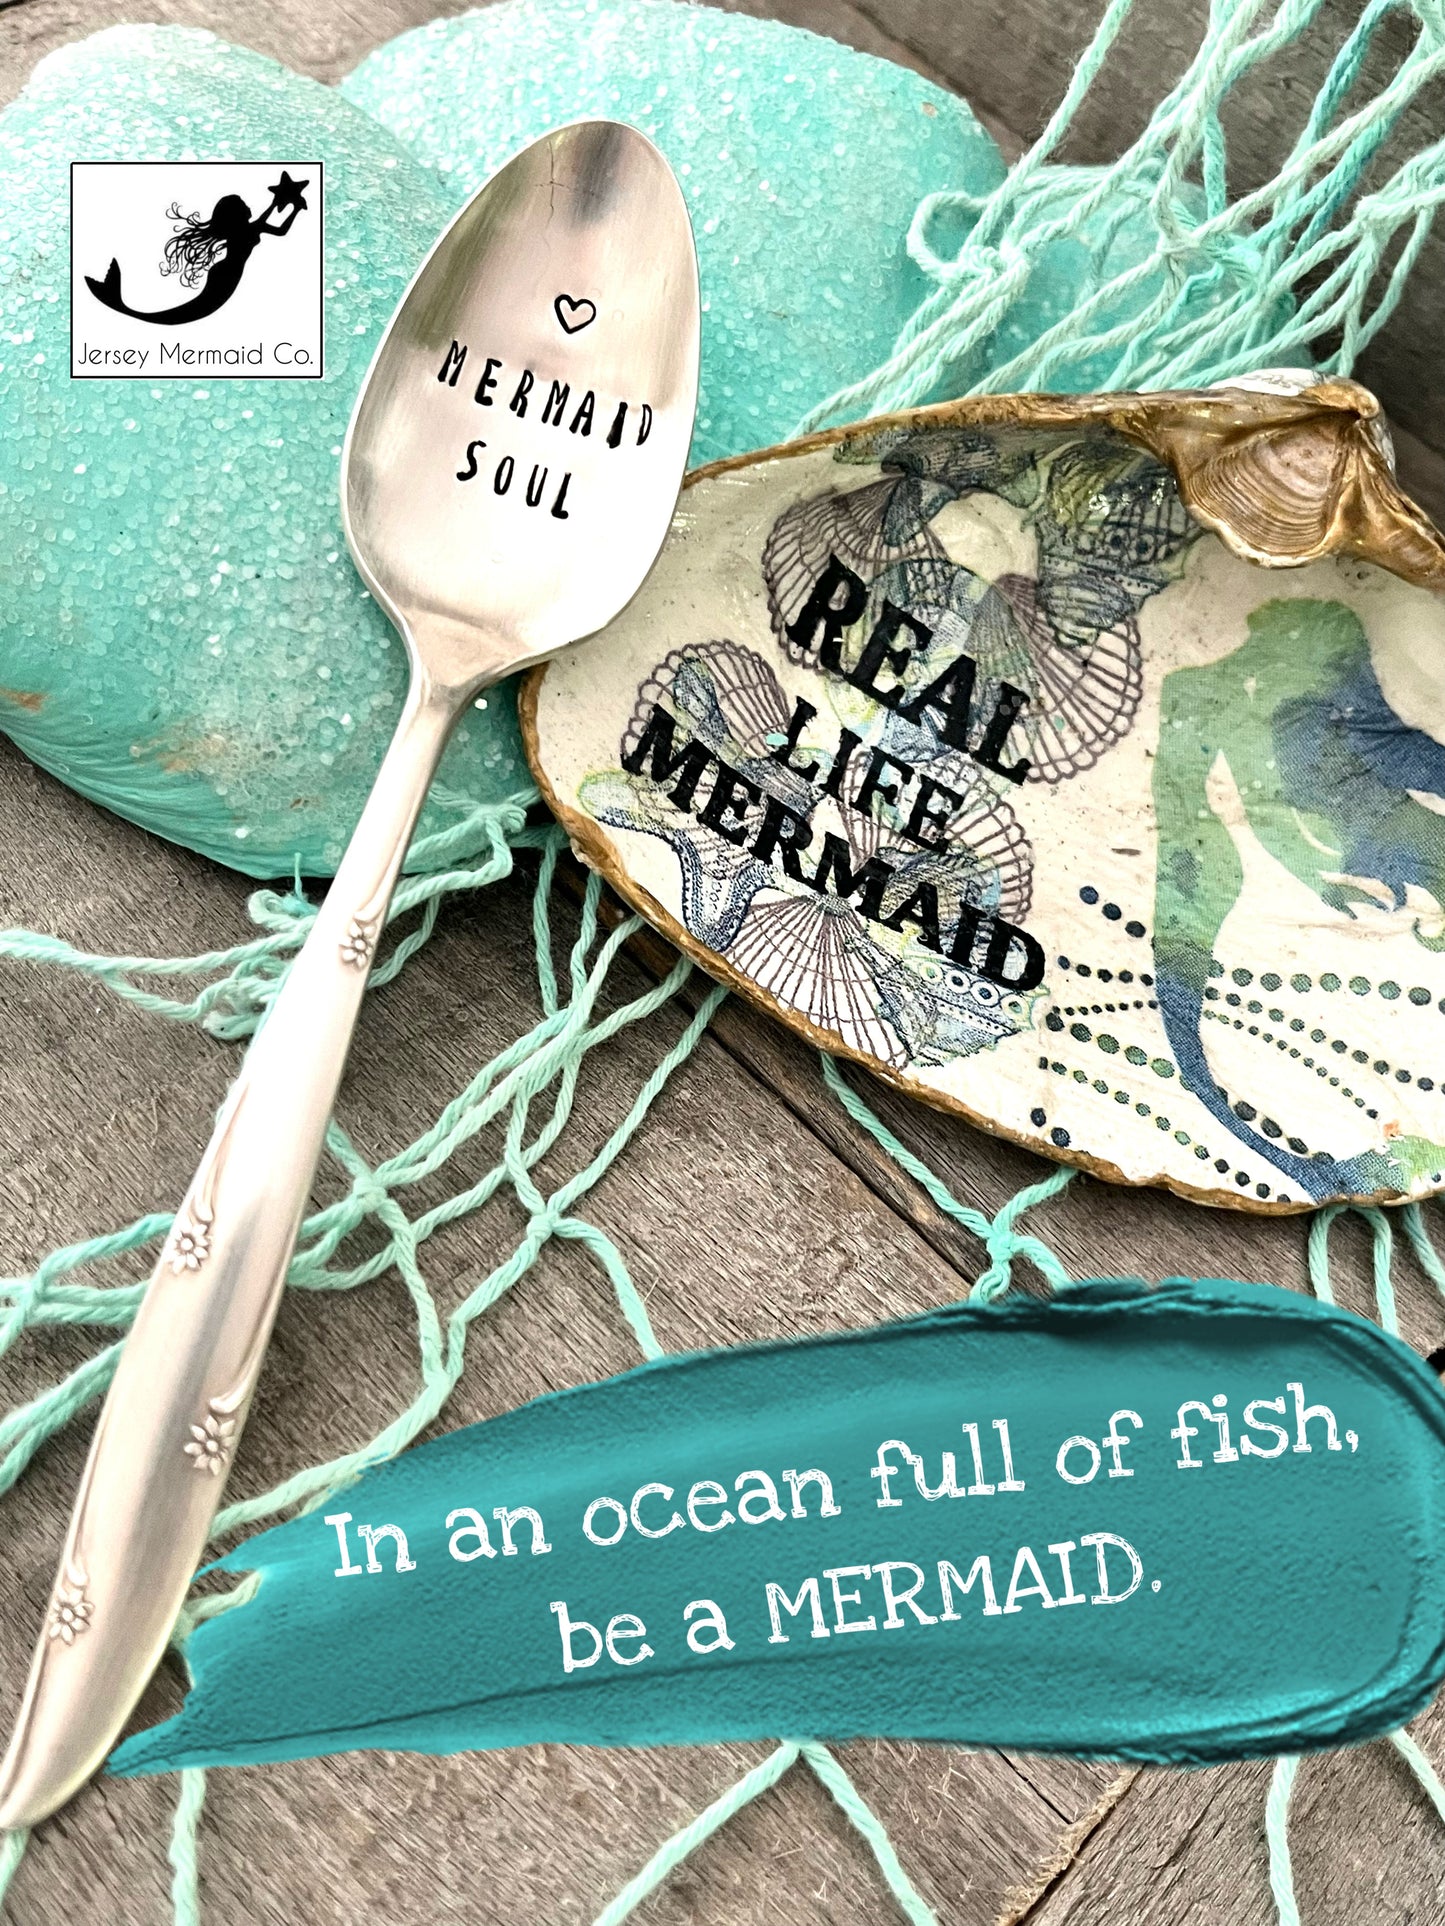 Hand - Stamped Vintage Silverware Teaspoon (Mermaid Soul)